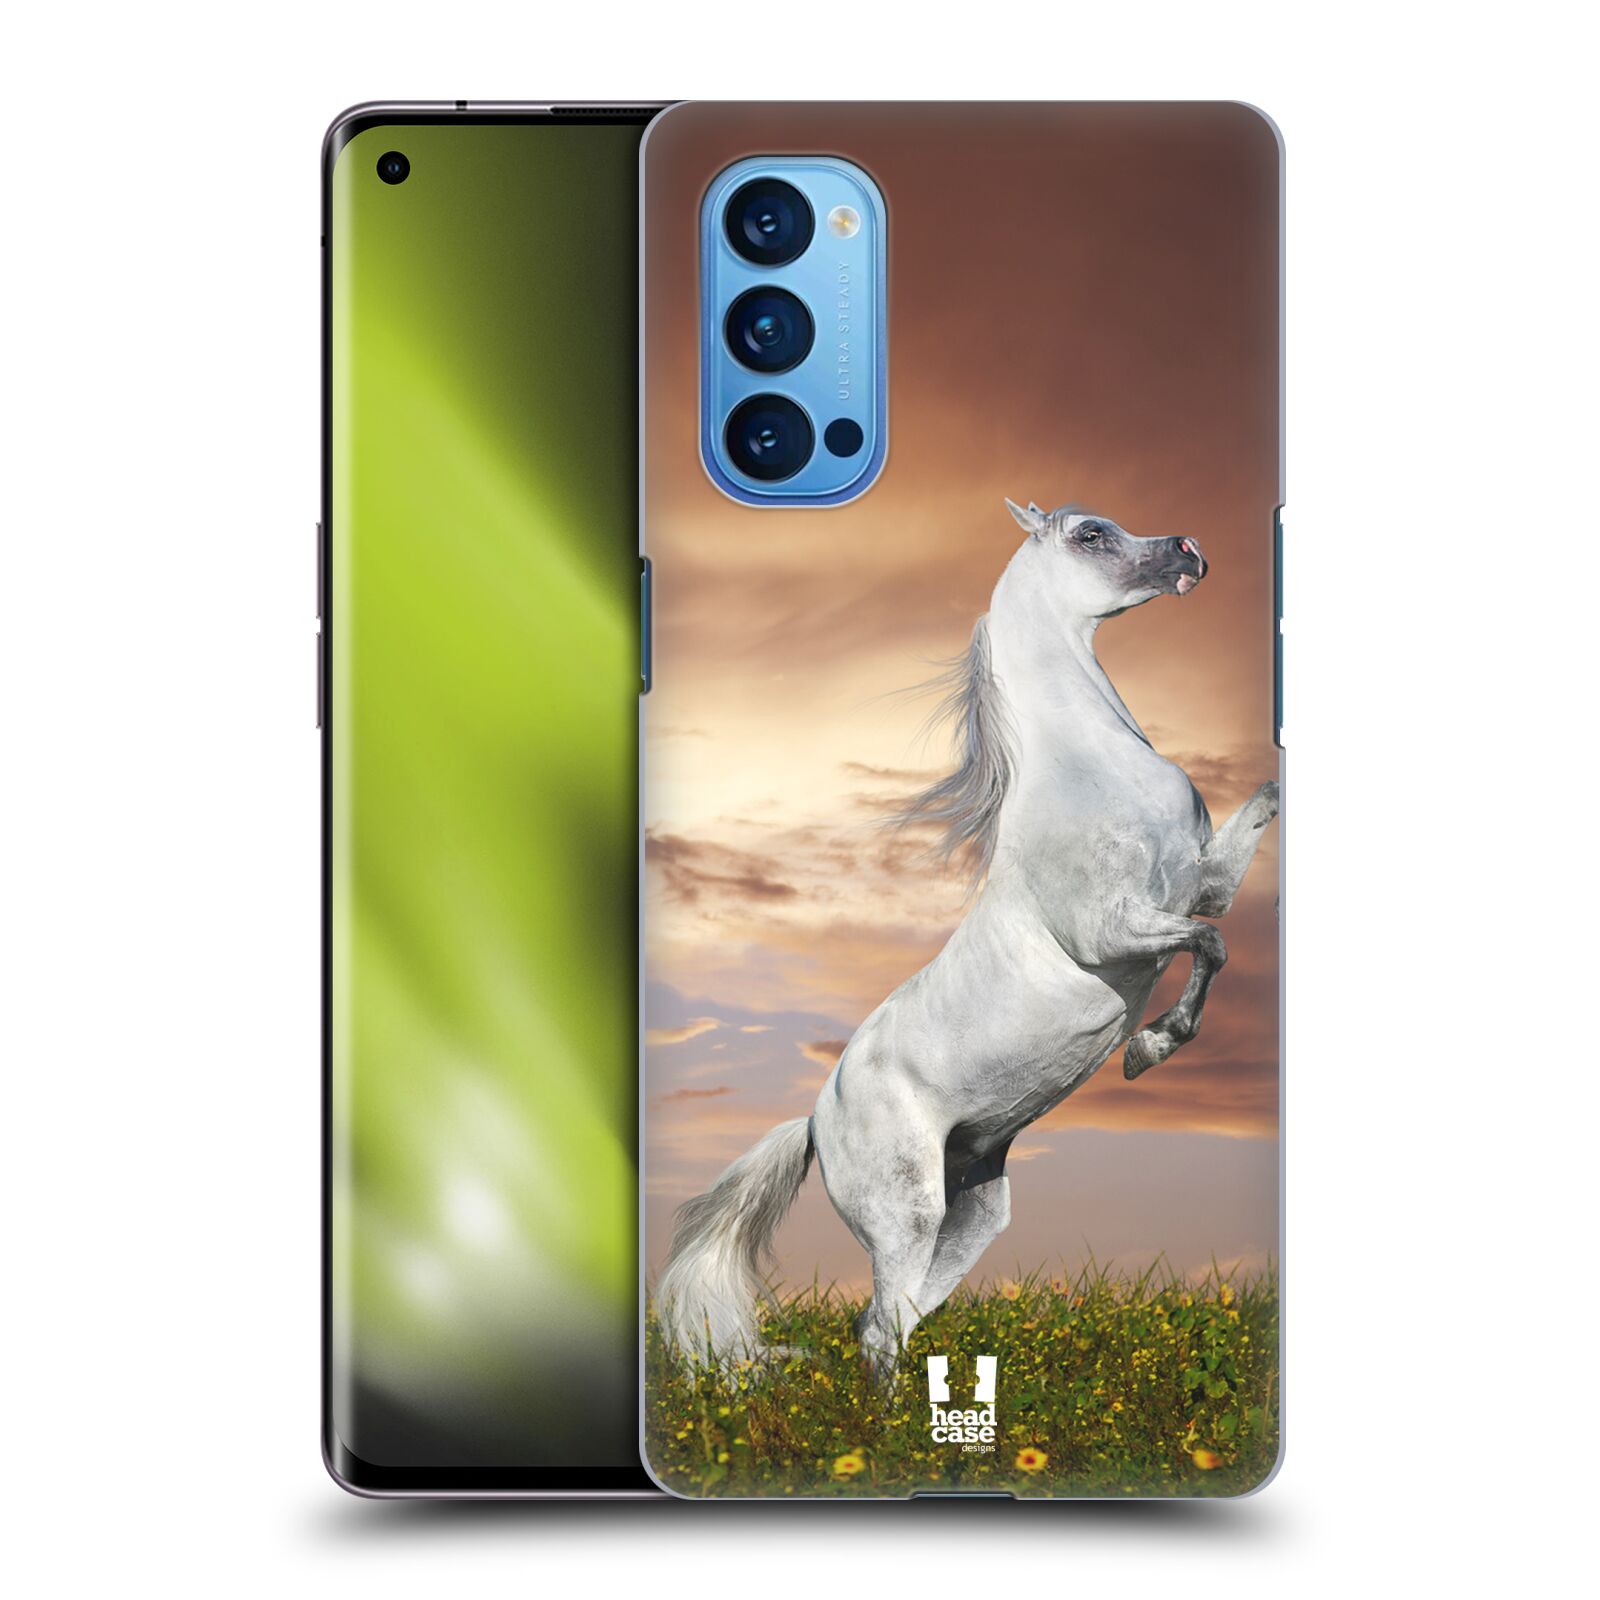 Zadní obal pro mobil Oppo Reno 4 PRO 5G - HEAD CASE - Svět zvířat divoký kůň